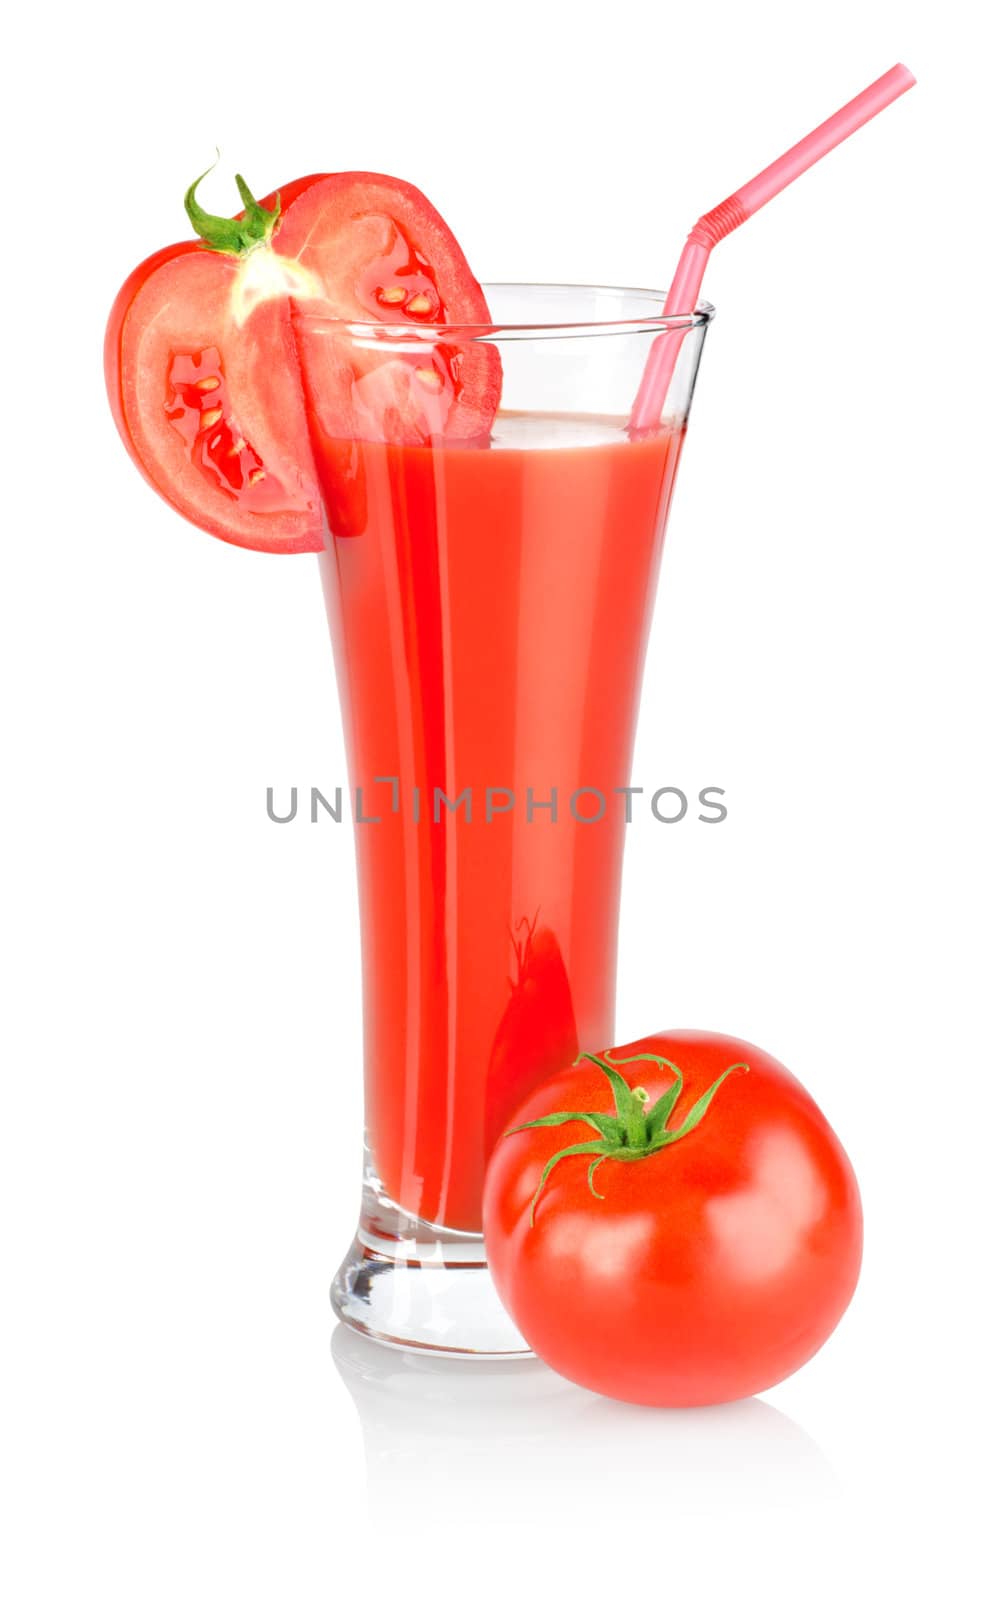 Tomato juice and tomato isolated on white background